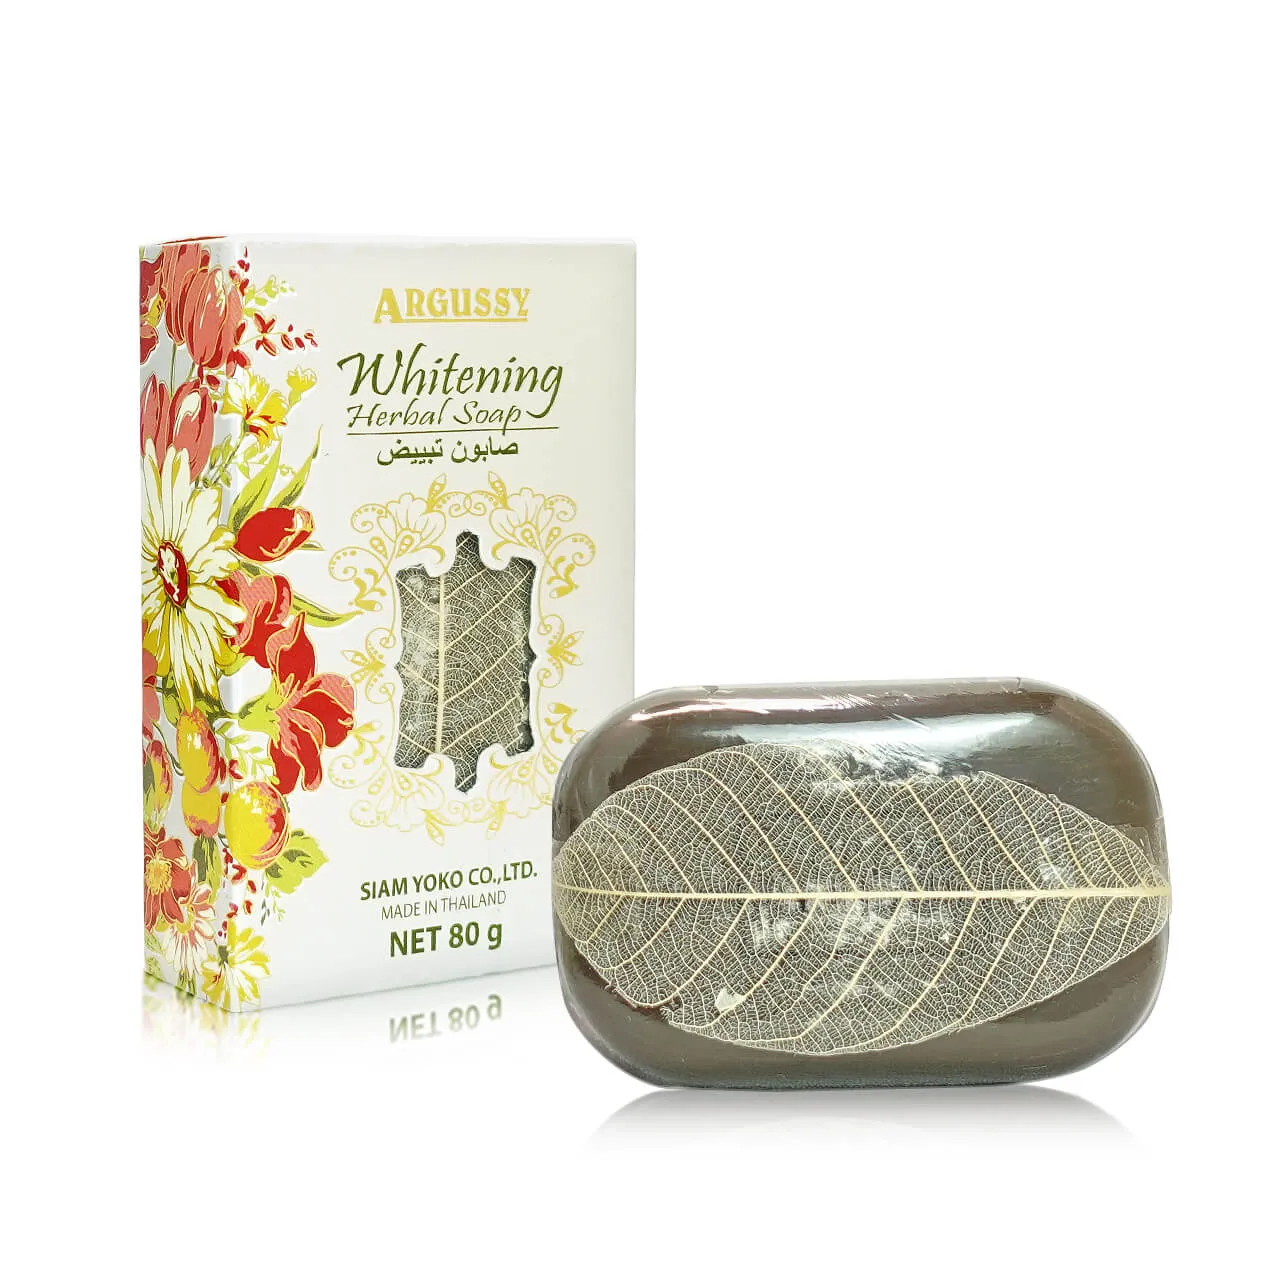 Argussy Whitening Herbal Soap 80g